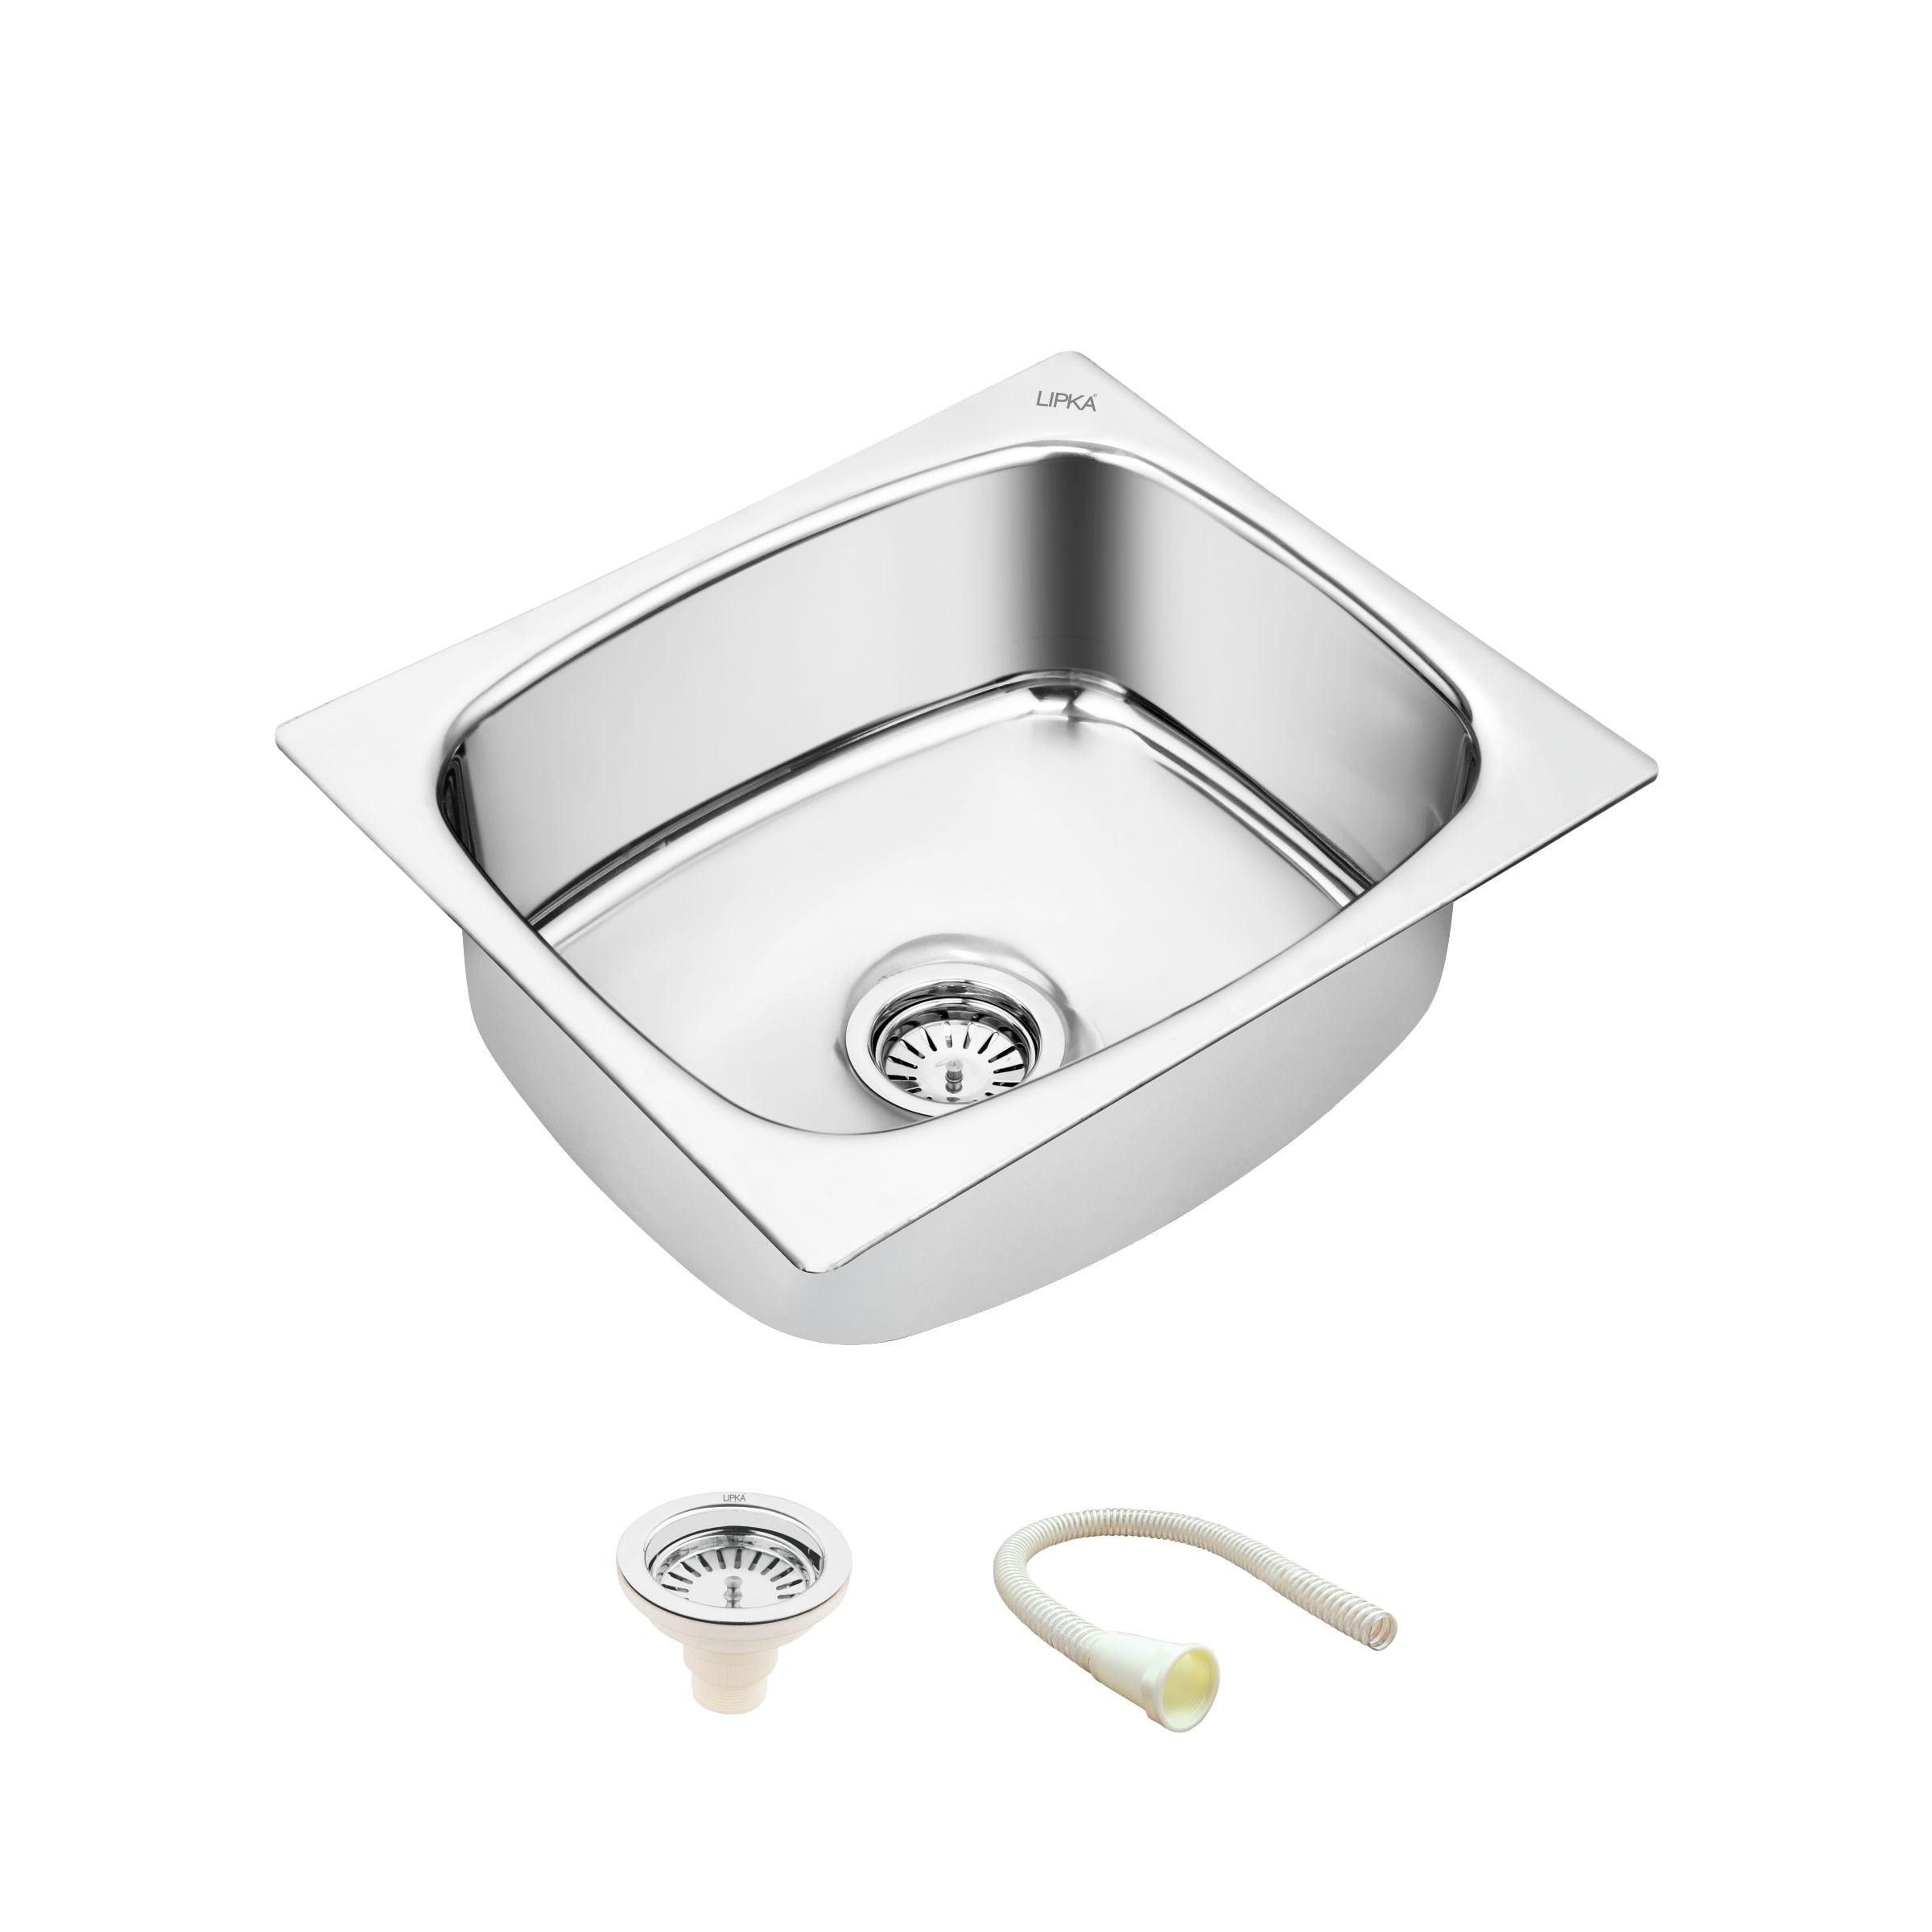 Round Single Bowl Kitchen Sink (22 x 18 x 8 Inches) - LIPKA - Lipka Home